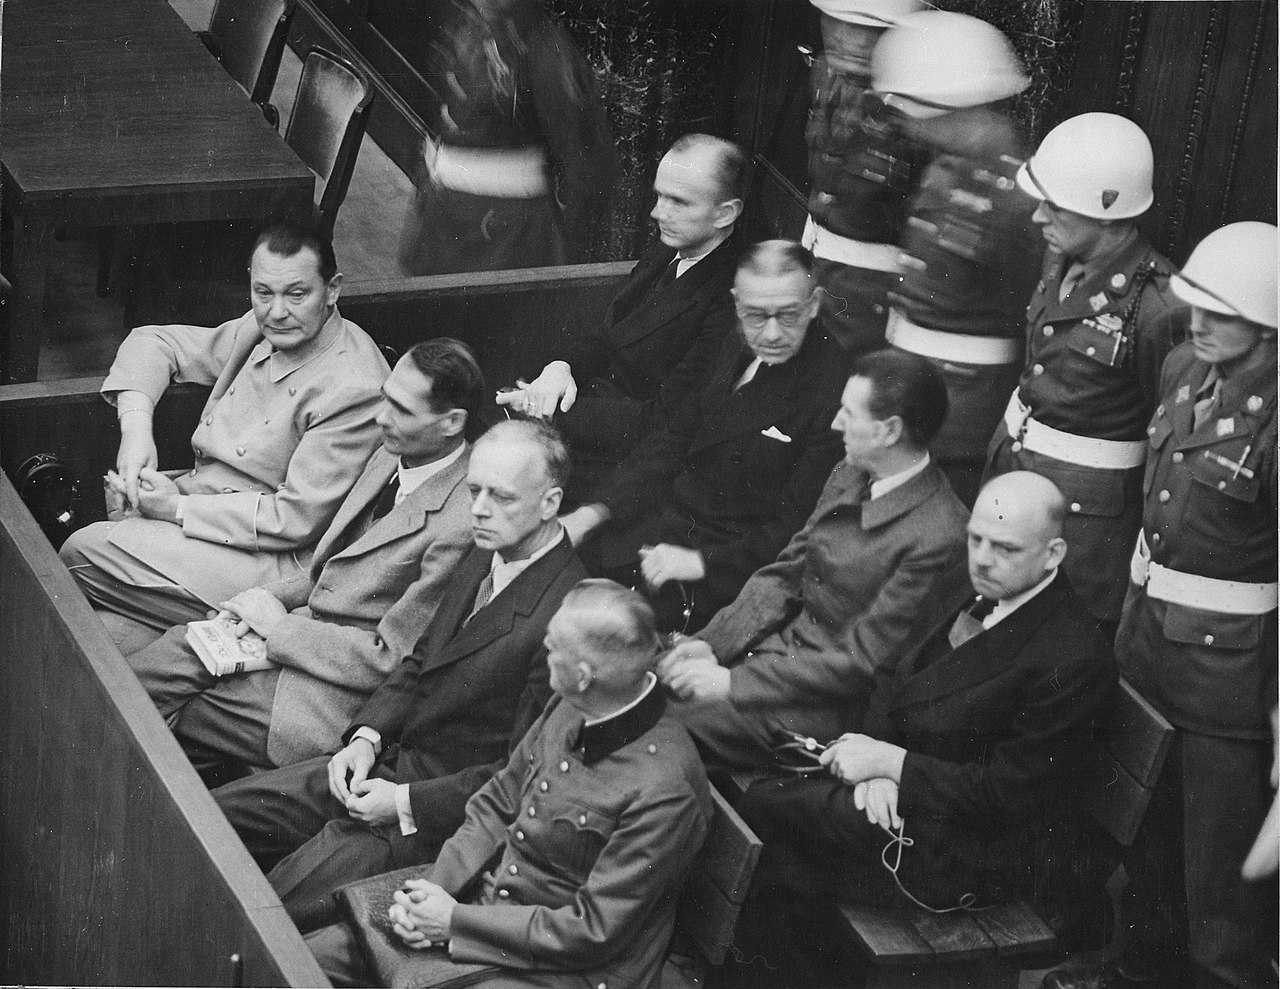 紐倫堡審判中由左至右依序為戈林（Hermann Göring）、赫斯（Rudolf Heß）、里賓特洛甫（Ulrich von Ribbentrop）、凱特爾（Wilhelm Keitel）；後排：鄧尼茨（Karl Dönitz）、雷德爾（Erich Raeder）、席拉赫（Baldur von Schirach）、紹克爾（"Fritz" Sauckel），他們均為納粹德國的軍政首領。   圖：翻攝自維基百科